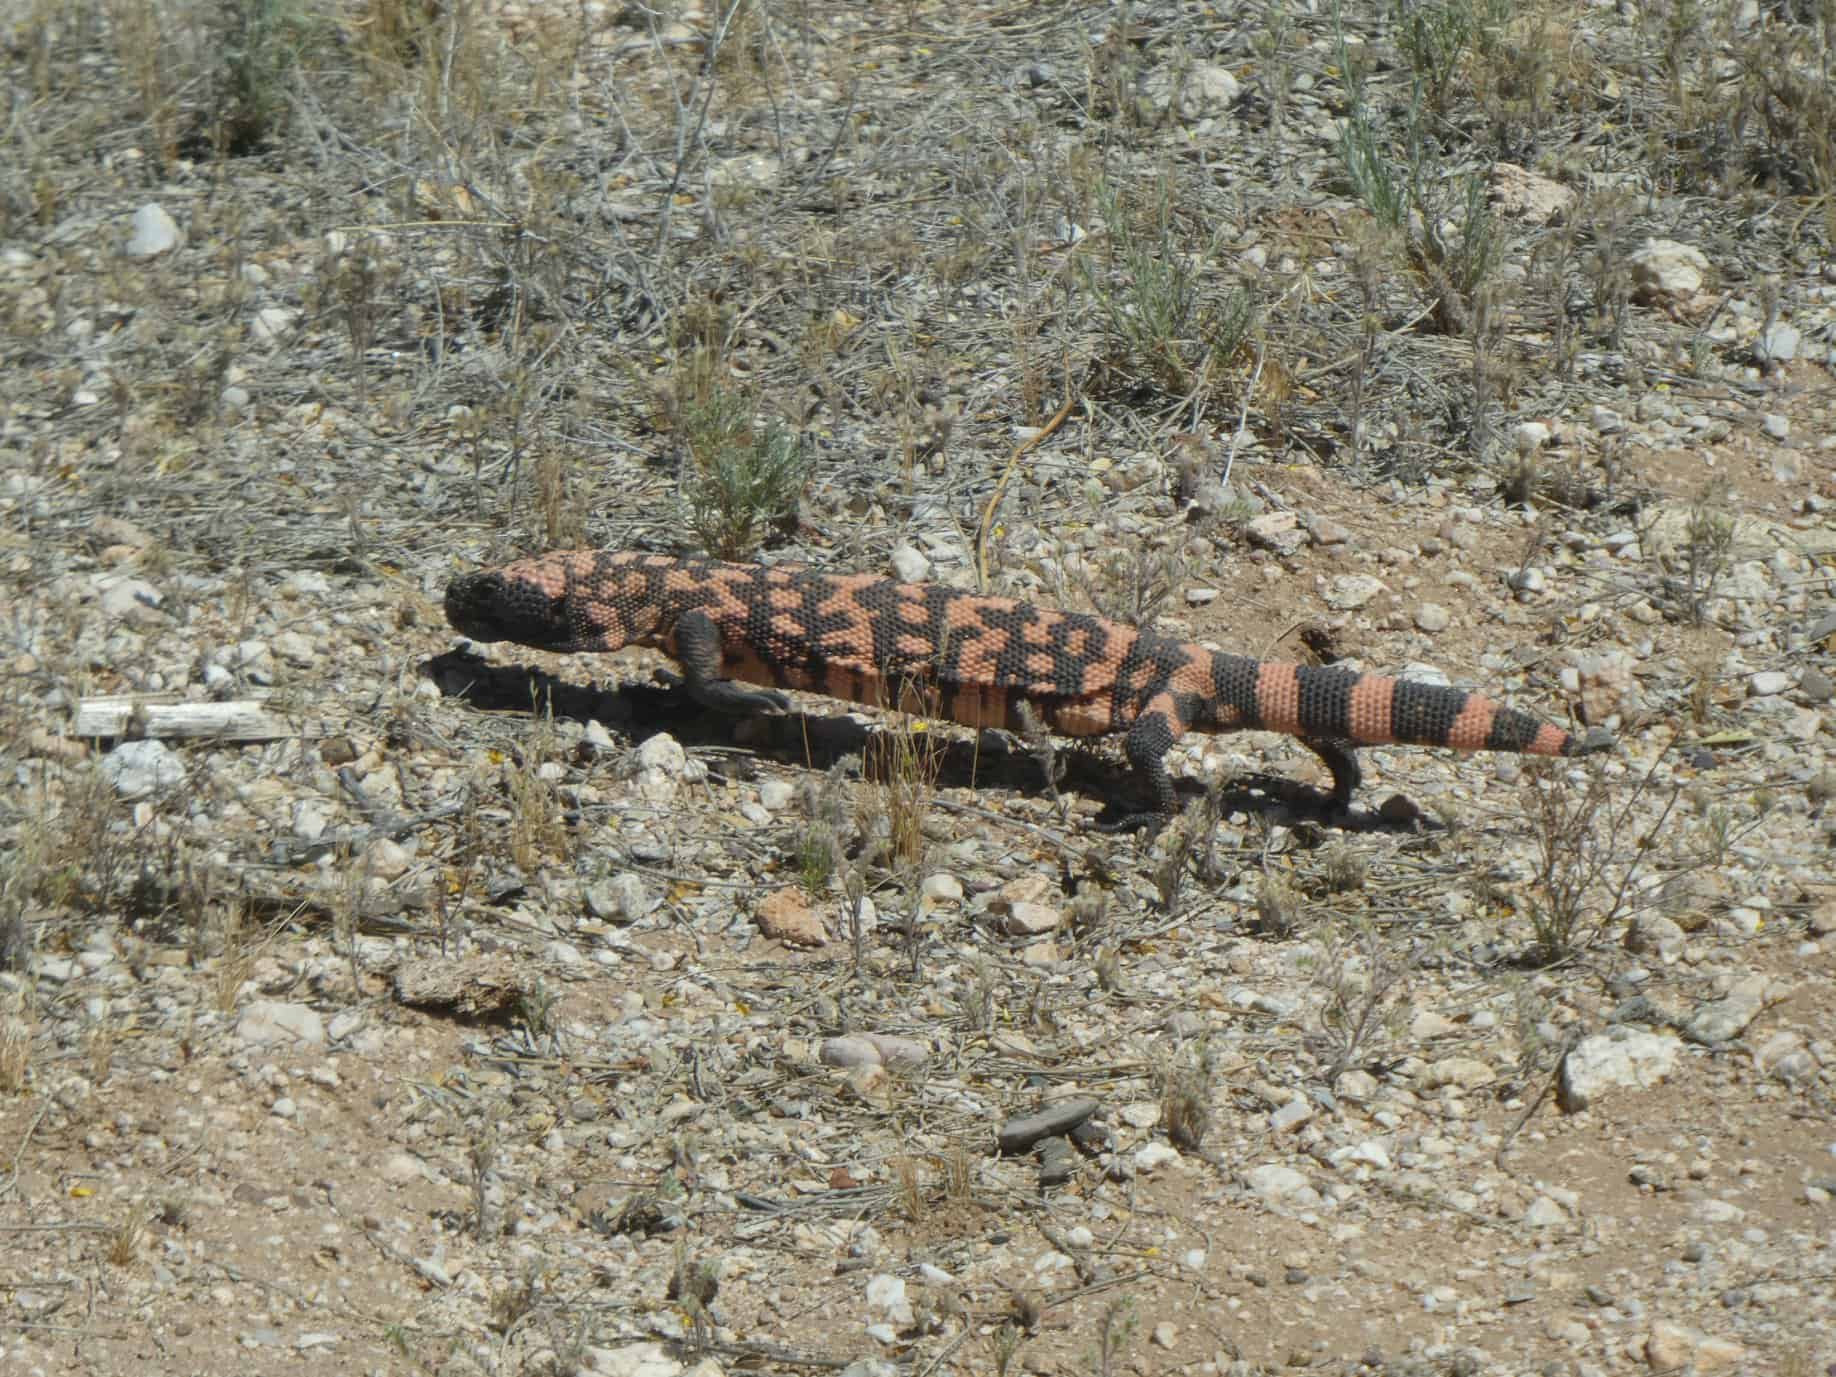 gila monster Tucson wildlife in desert